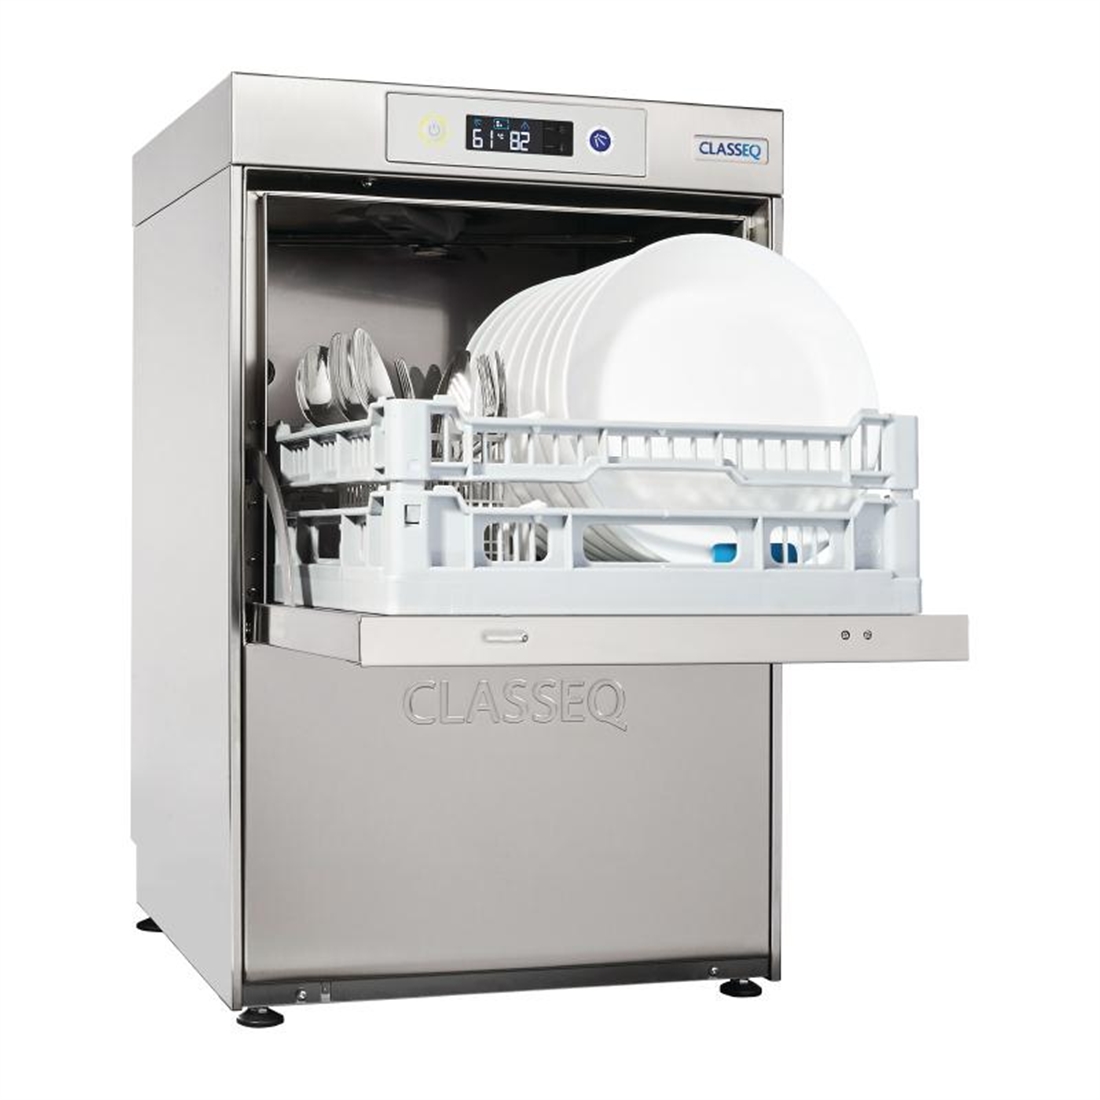 Classeq D400 Duo Dishwasher